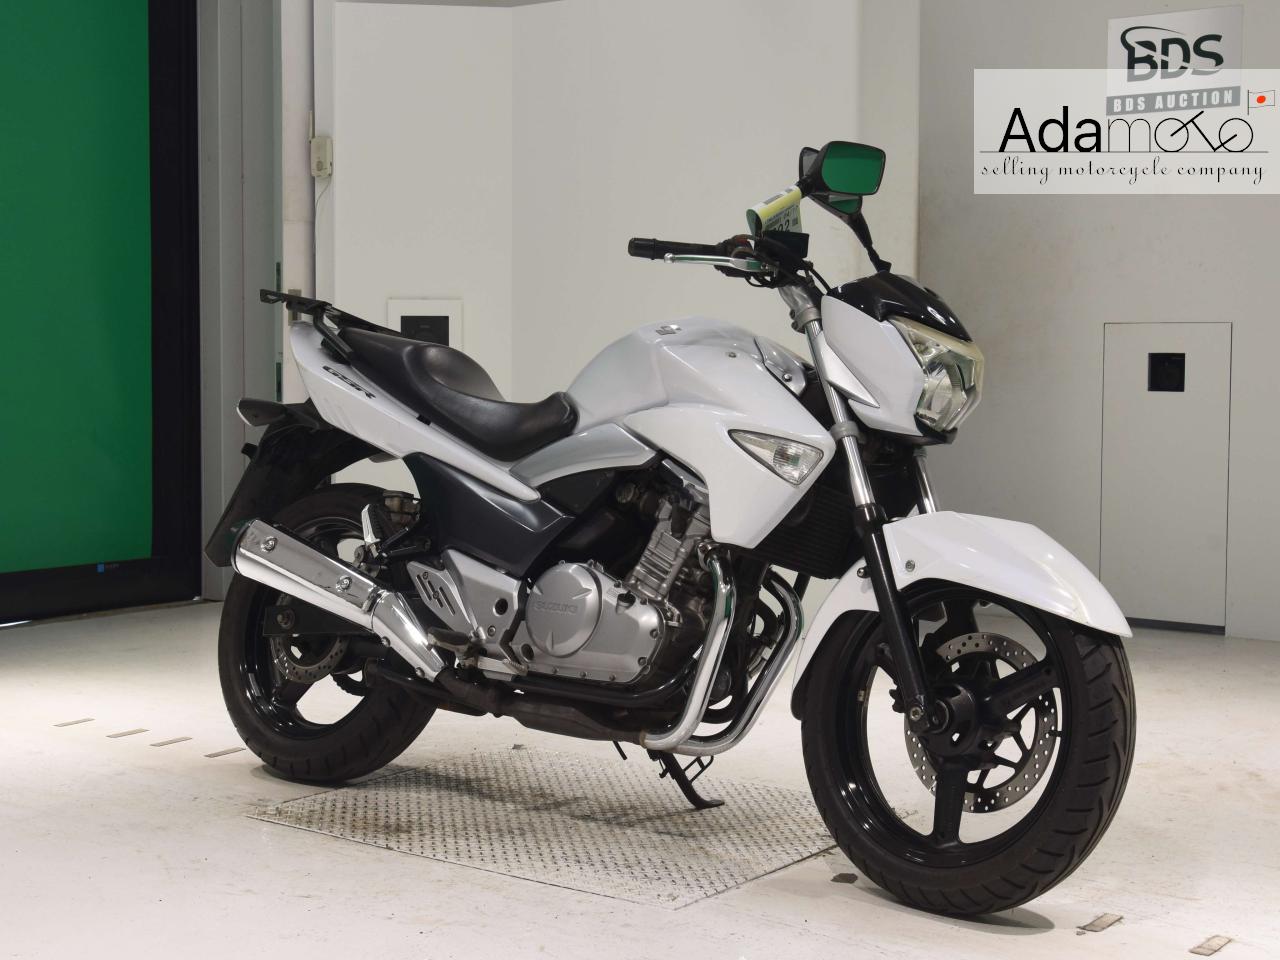 Suzuki GSR250 - Adamoto - Motorcycles from Japan